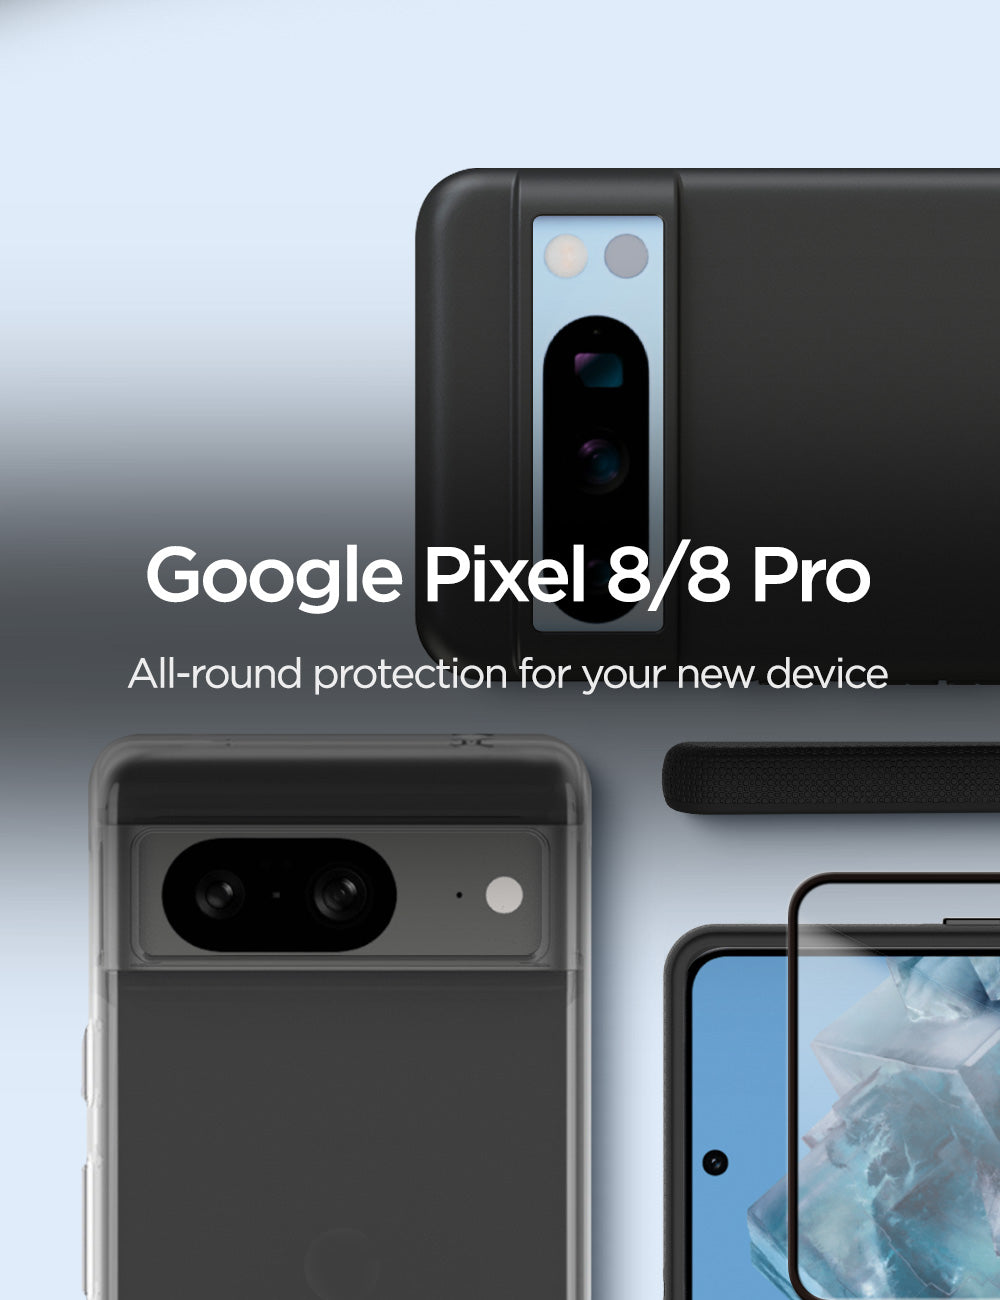 E53-Eiger-Google-Pixel-8_8-Pro-Launch-Banner-Mobile.jpg